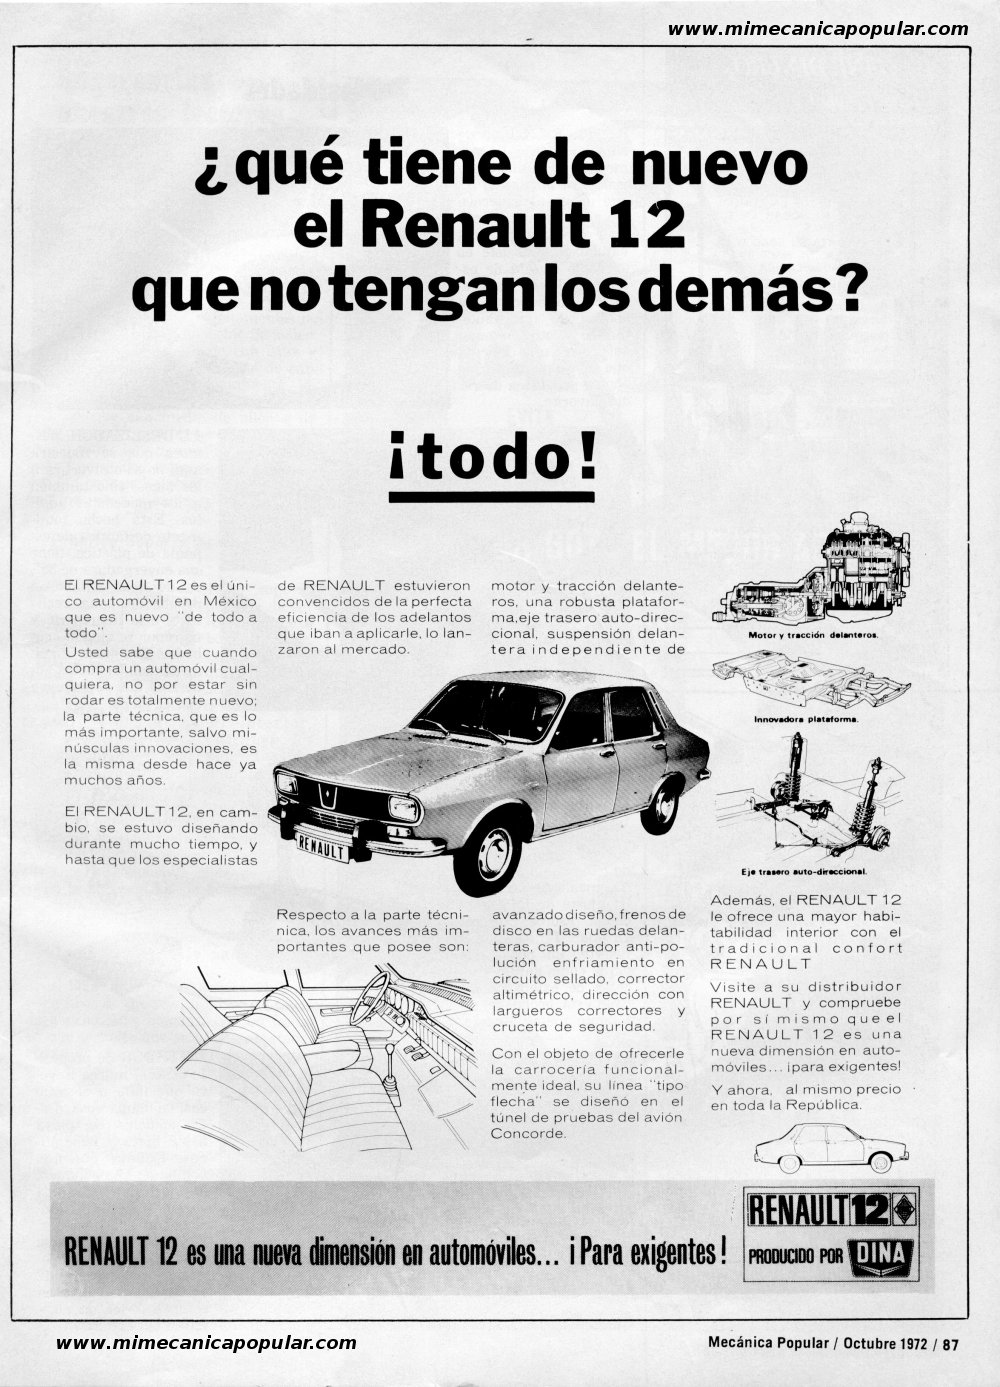 Publicidad - RENAULT 12 - Octubre 1972